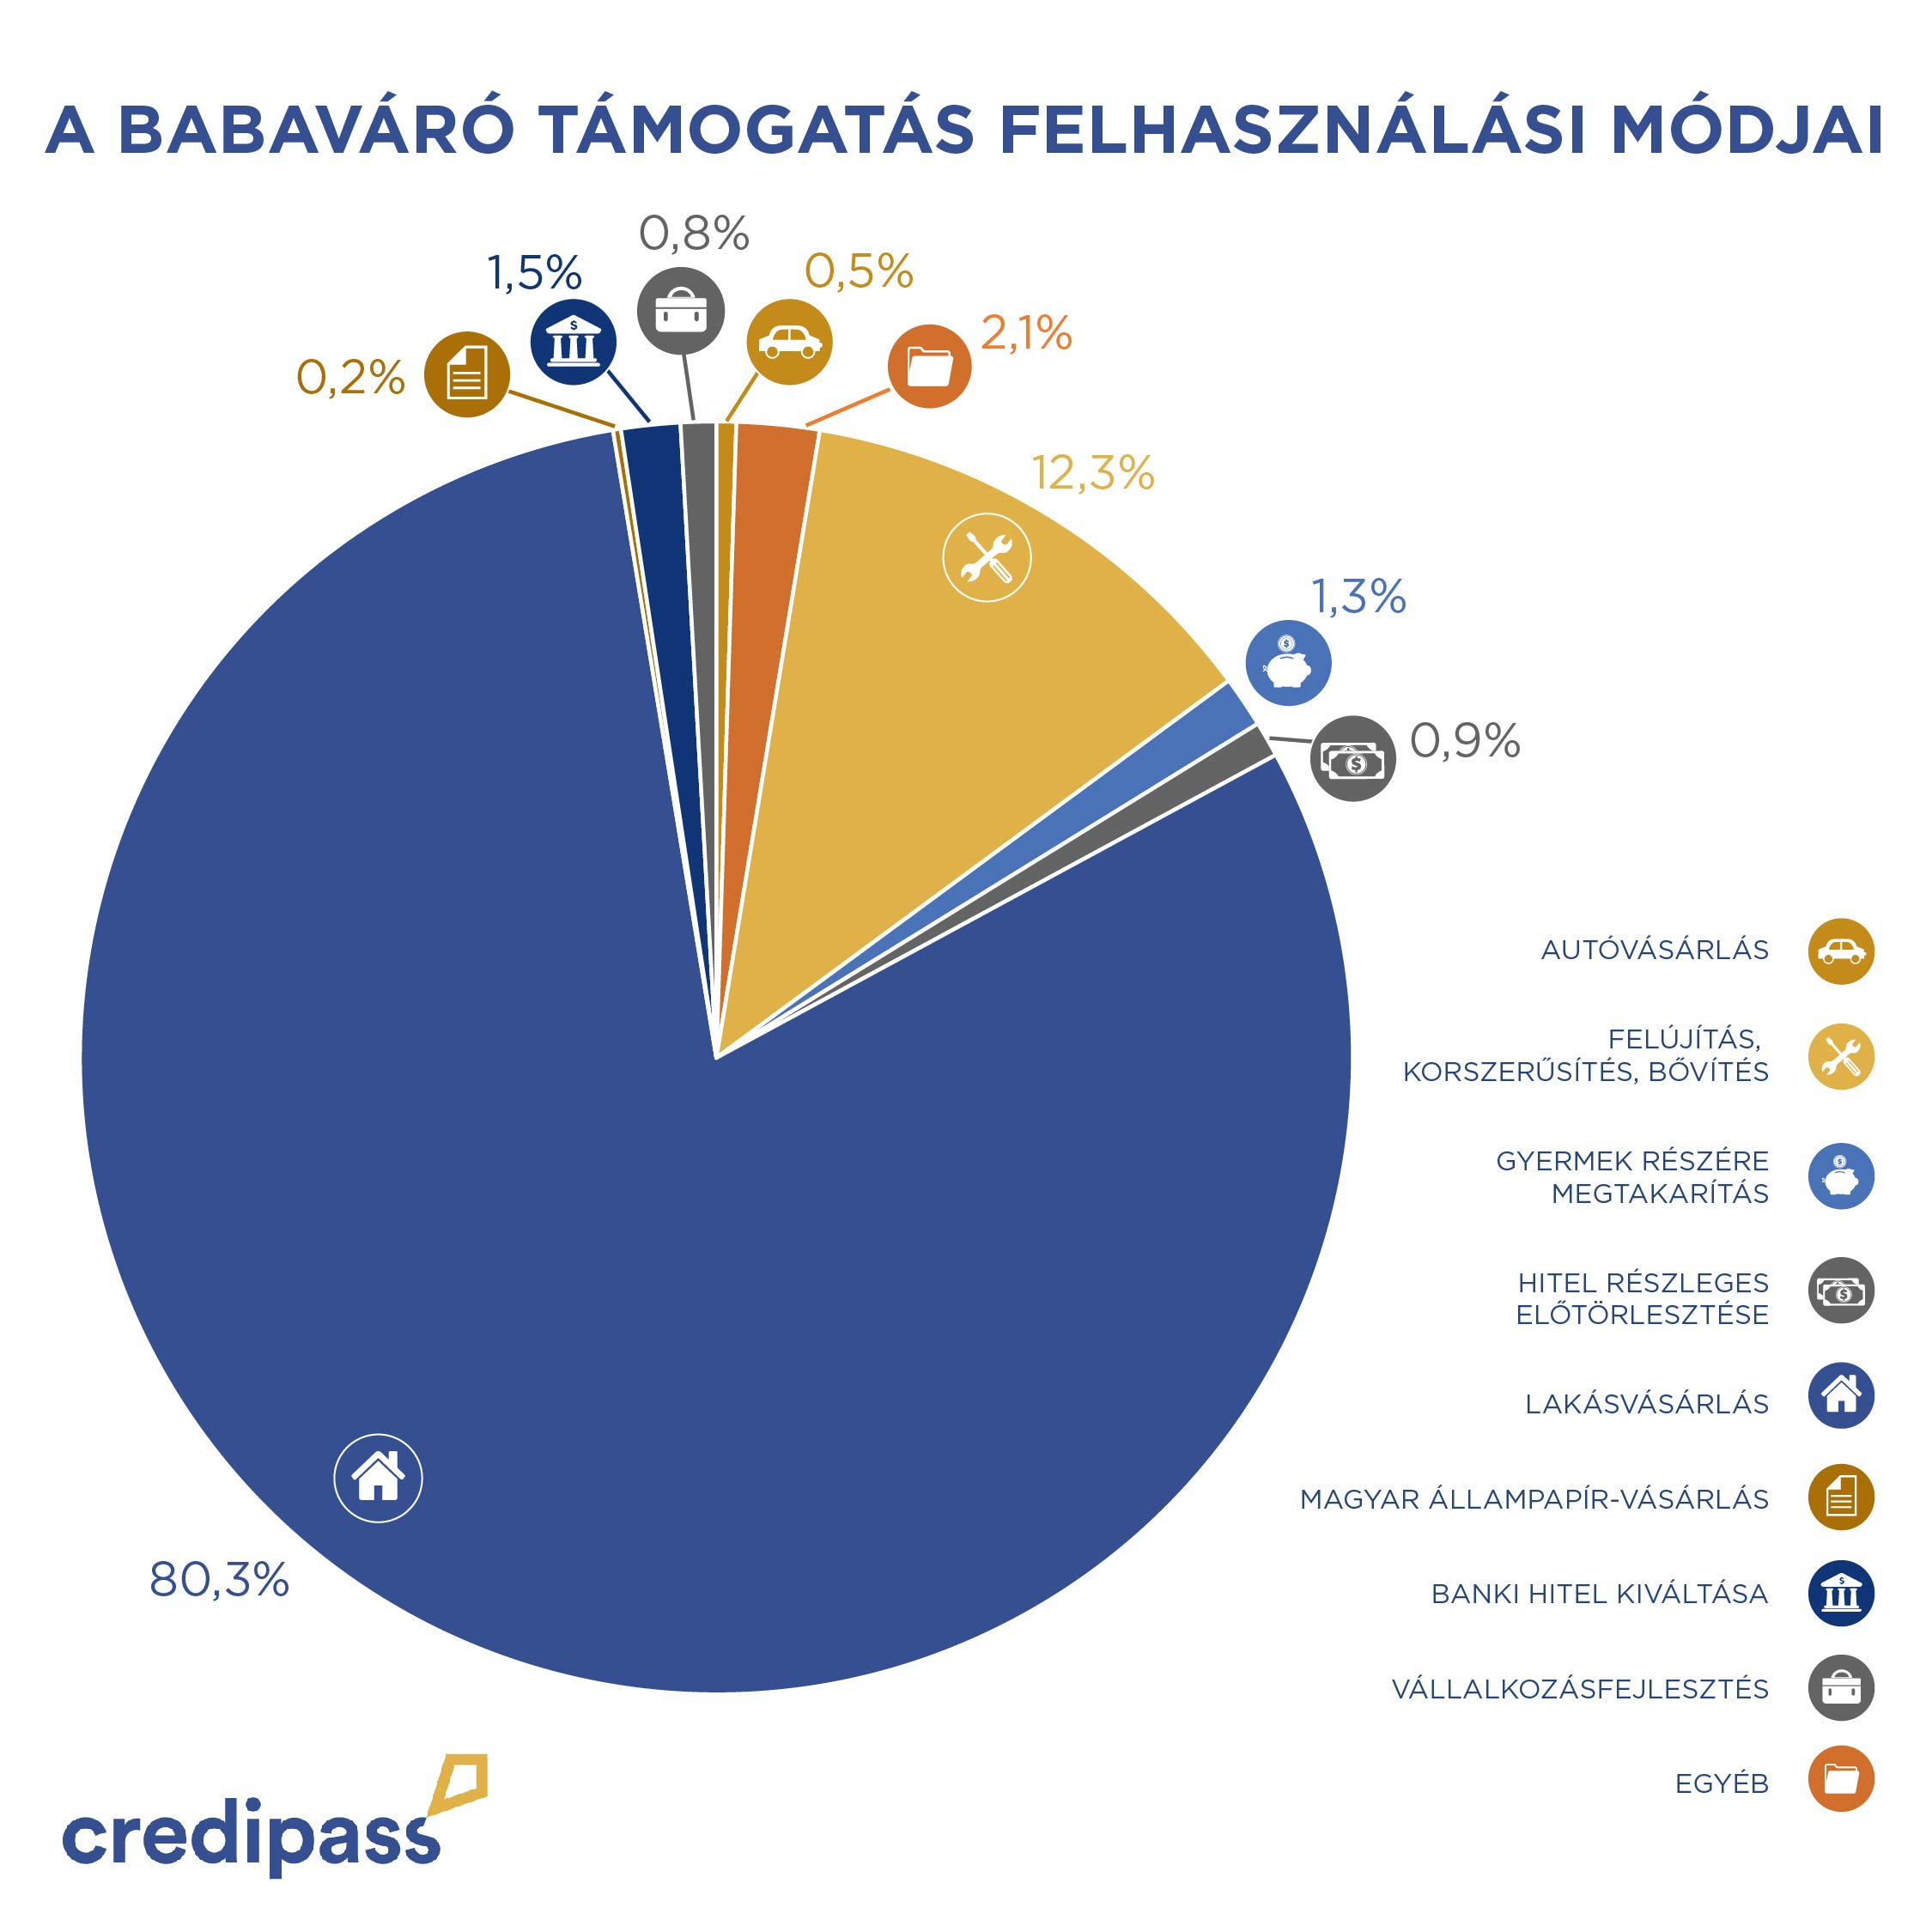 A Credipass ügyfelei főként lakáscélra használták fel az igényelt Babaváró támogatást.